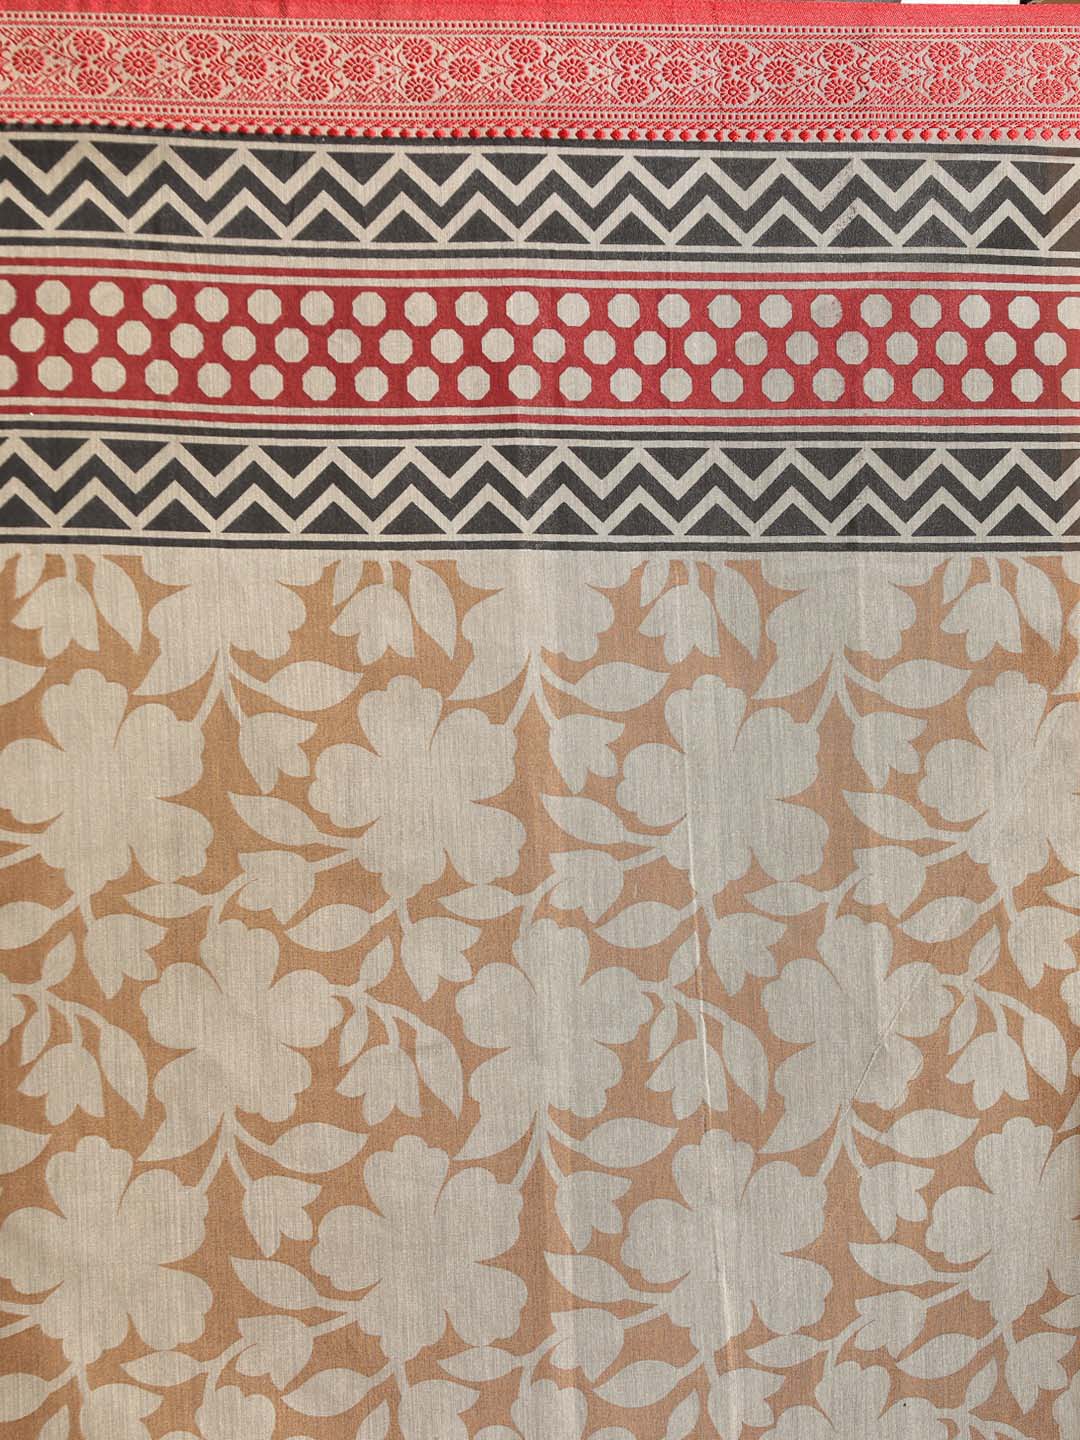 Indethnic Printed Cotton Blend Saree in Beige - Saree Detail View